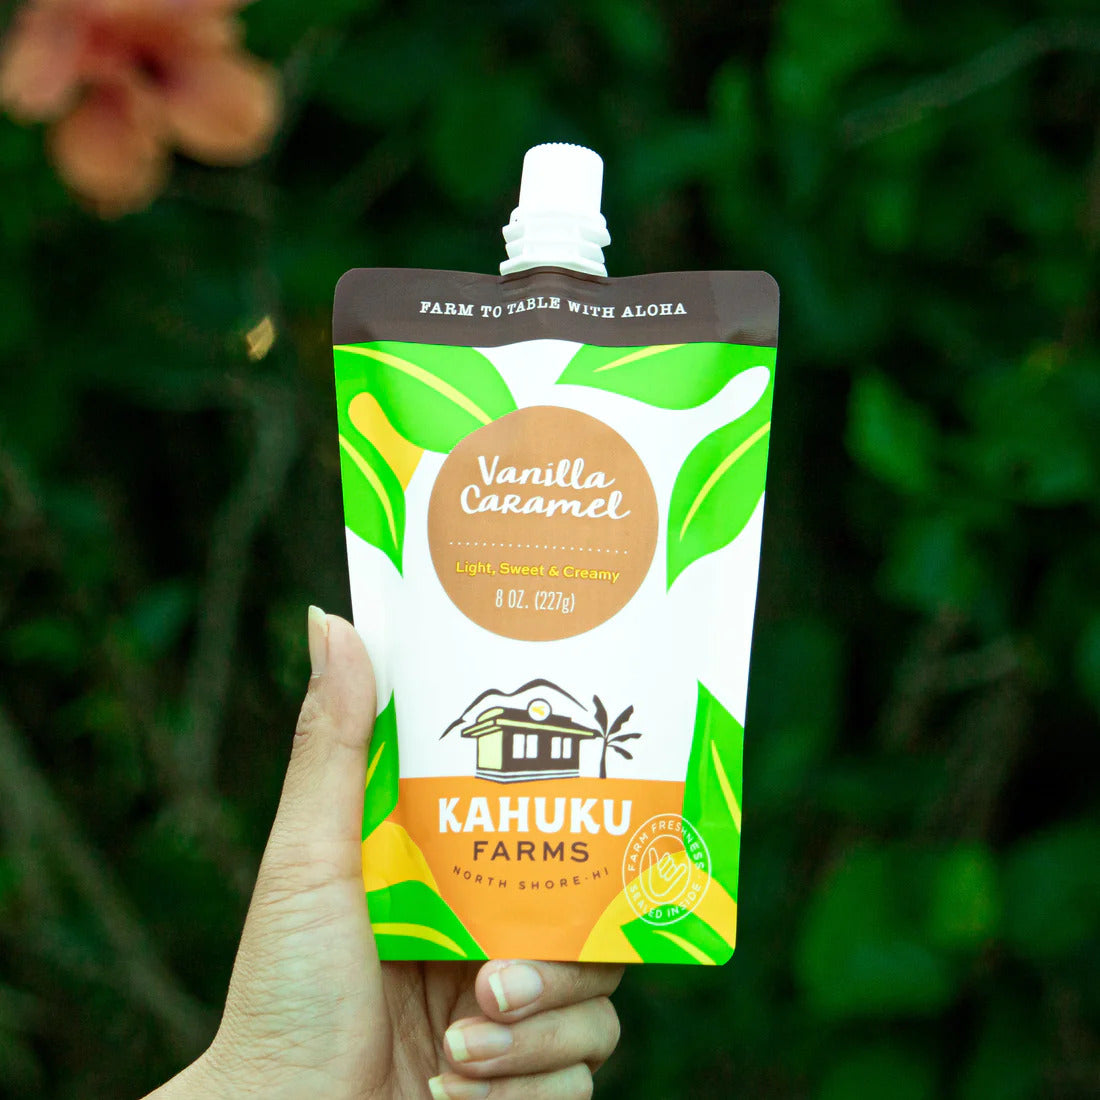 Pop-Up Mākeke - Kahuku Farms - Vanilla Caramel Sauce